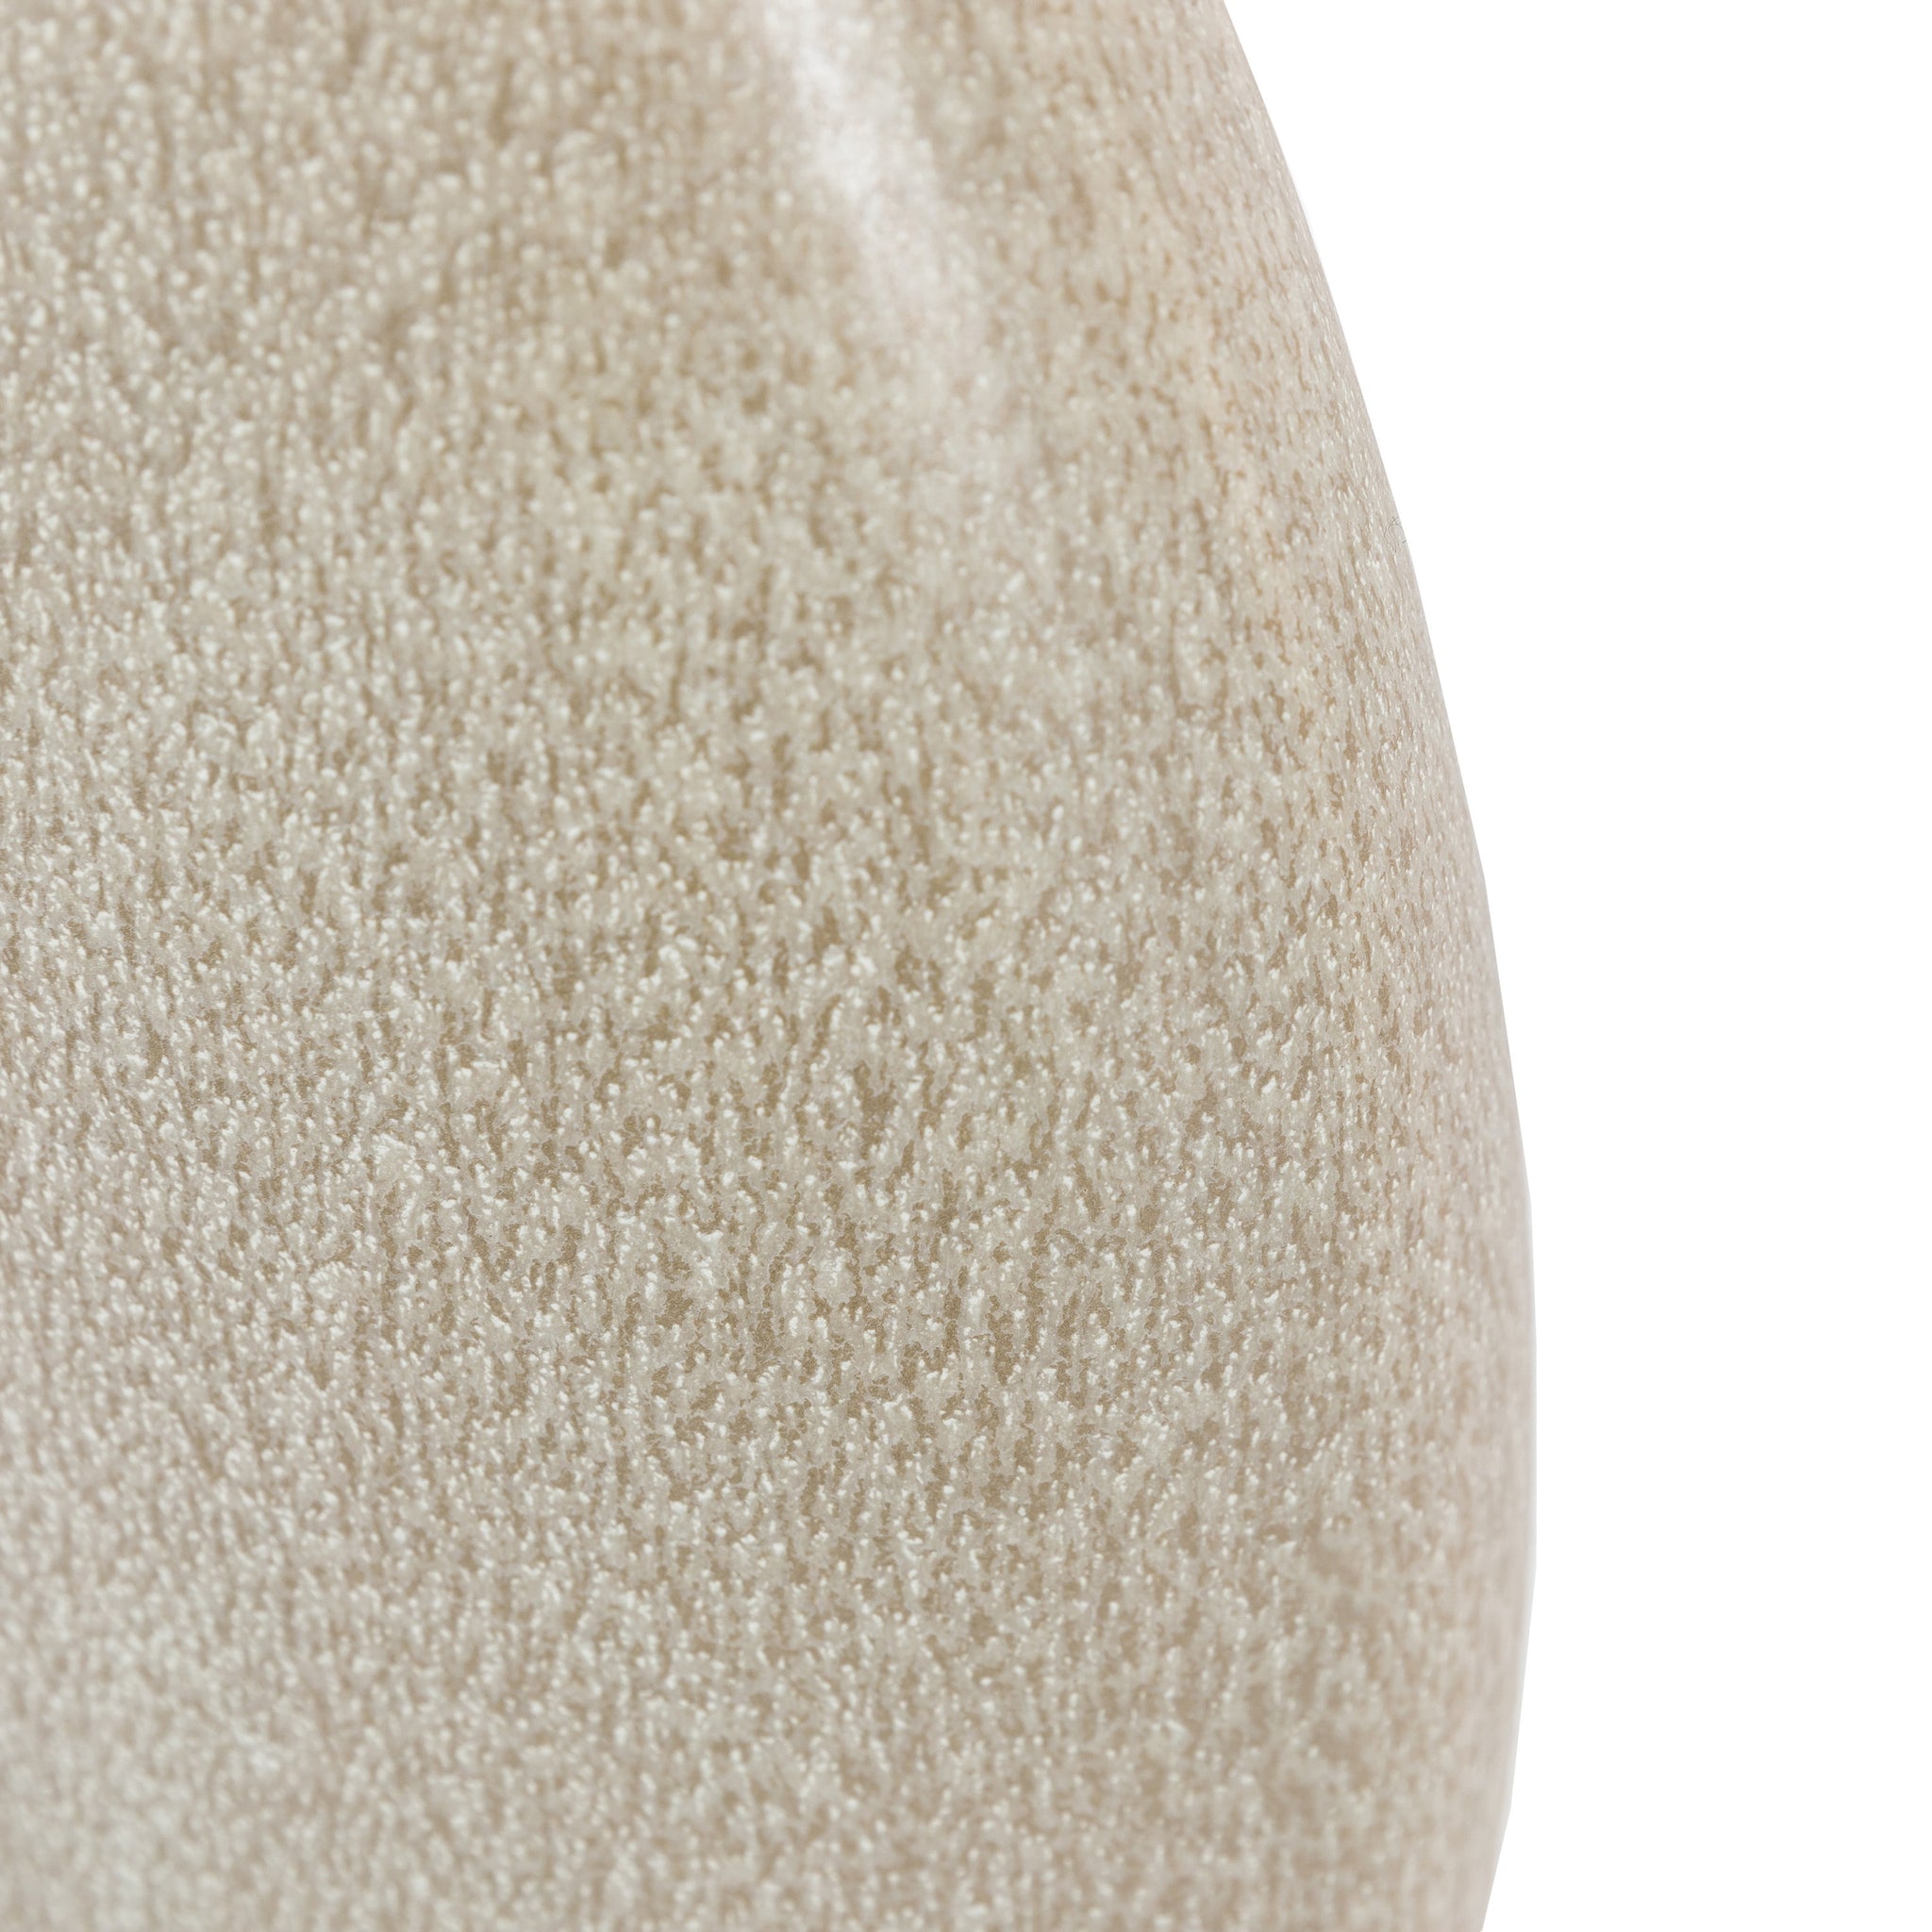 Muniz Pebble Vase Large